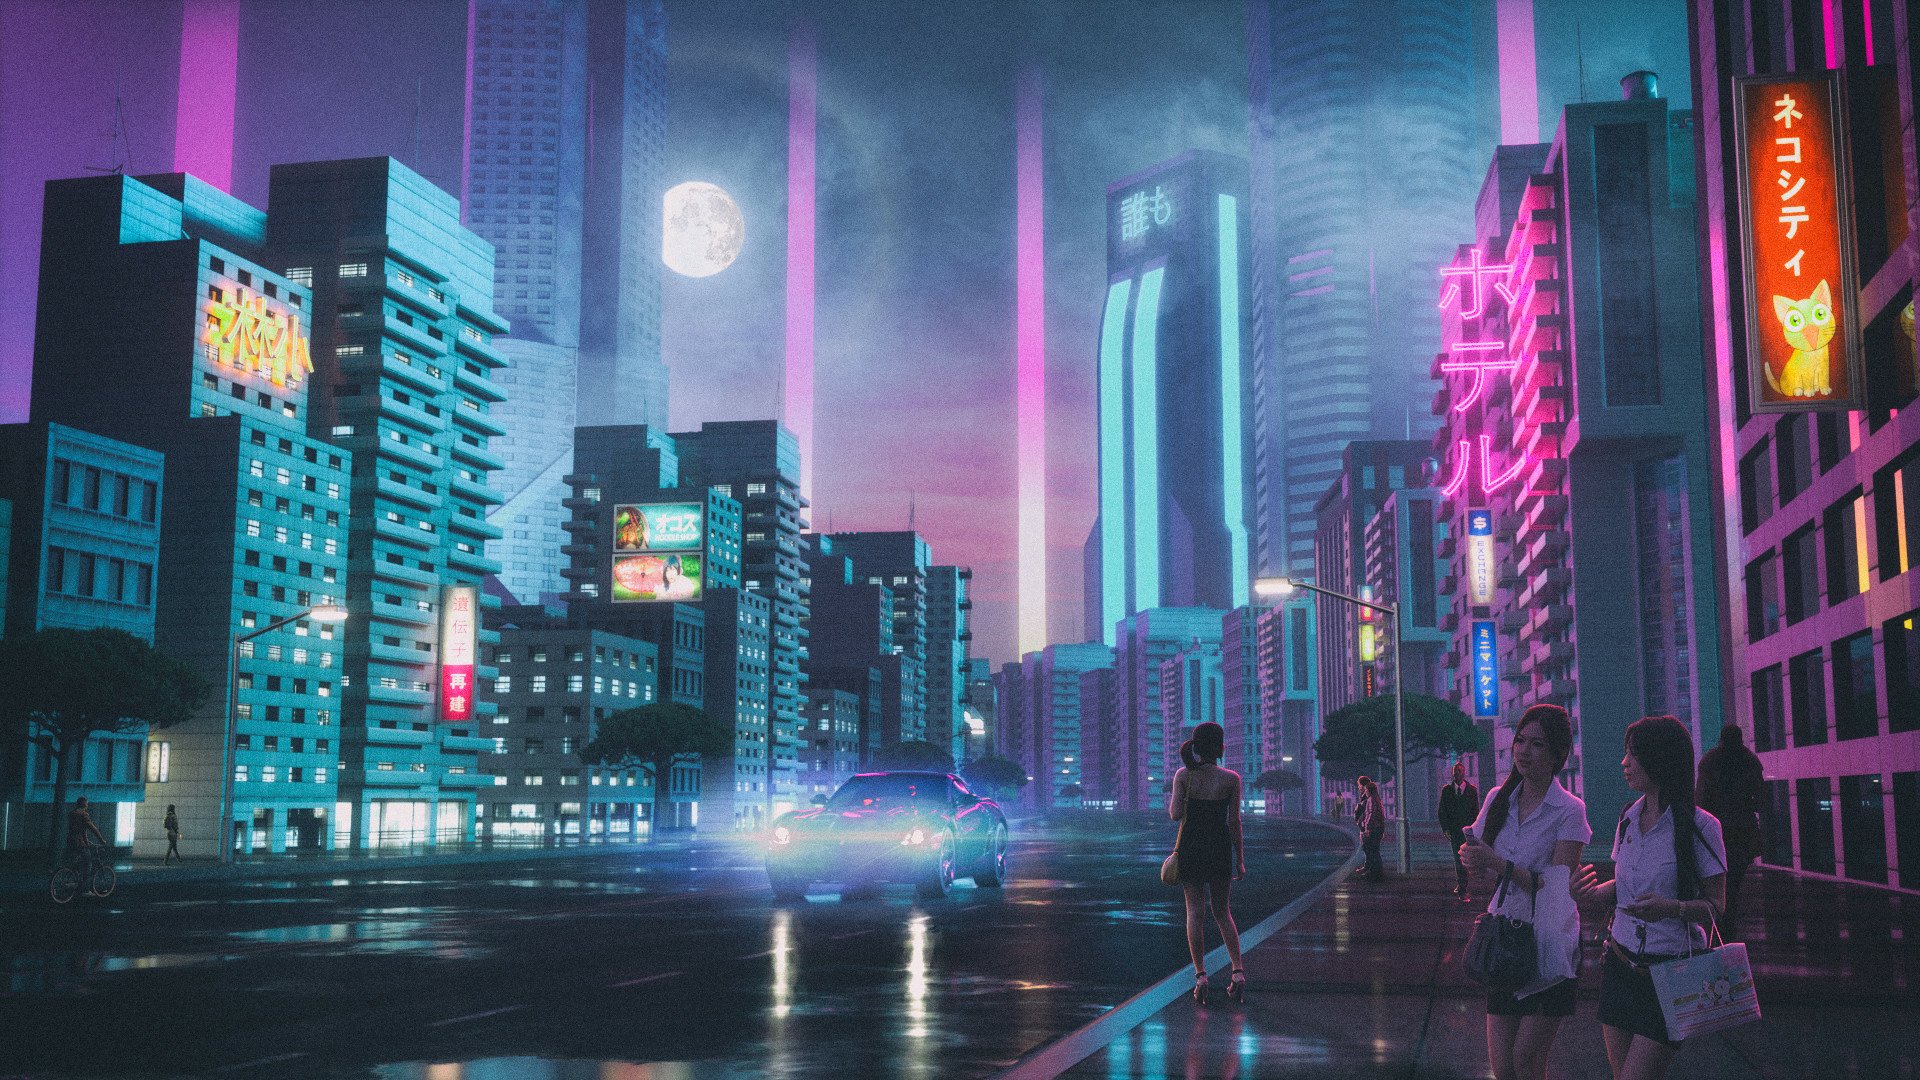 Sci Fi City HD Wallpaper by David Legnon